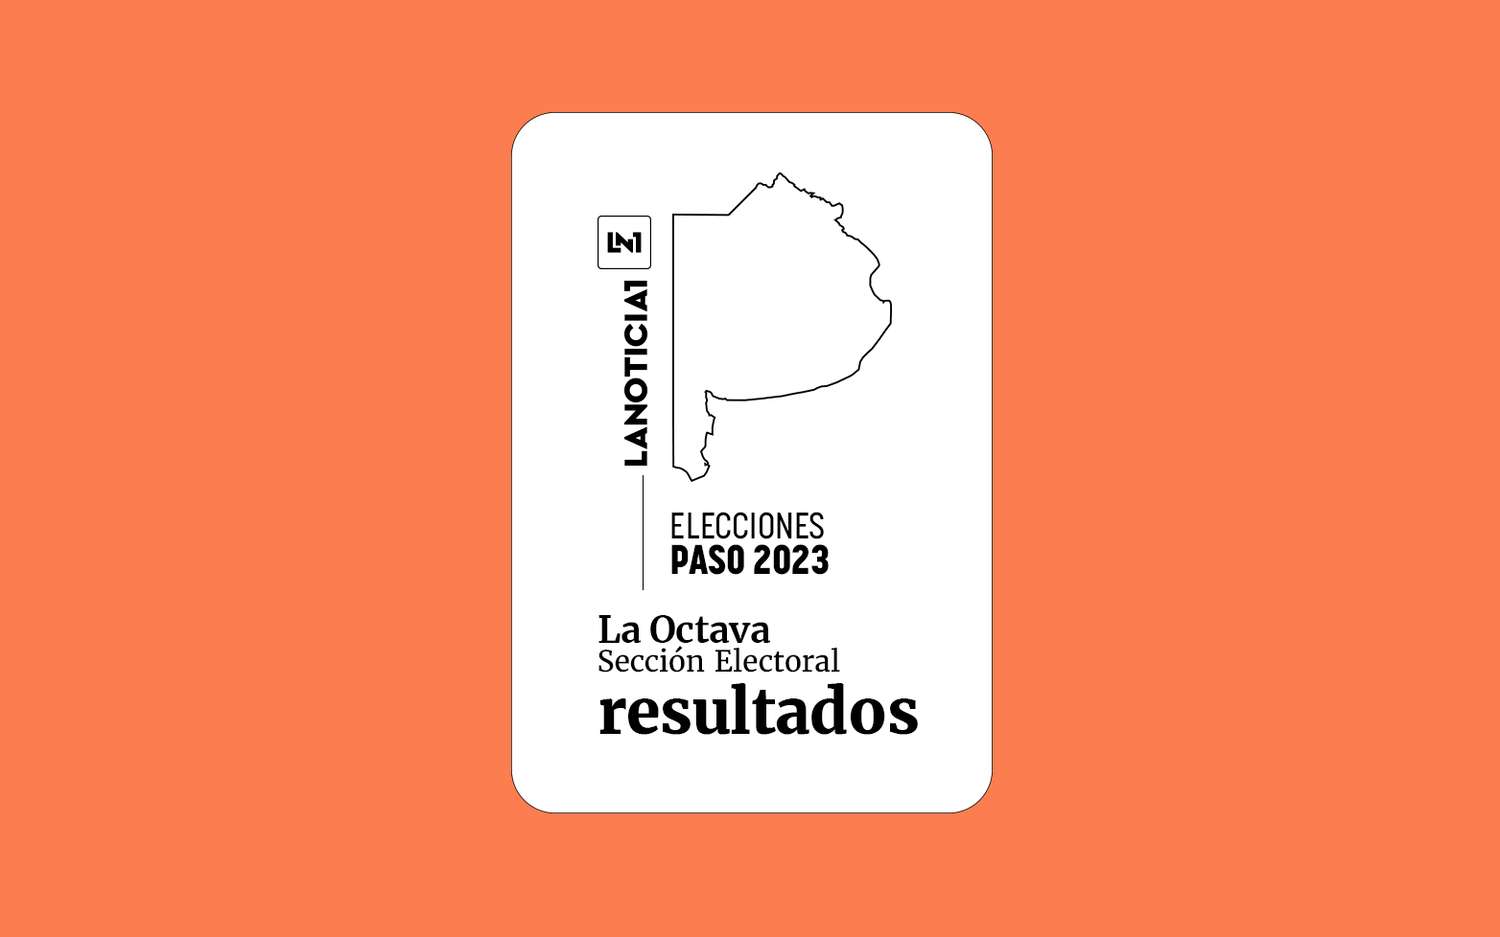 Elecciones PASO 2023: Resultados oficiales en la Octava Sección Electoral